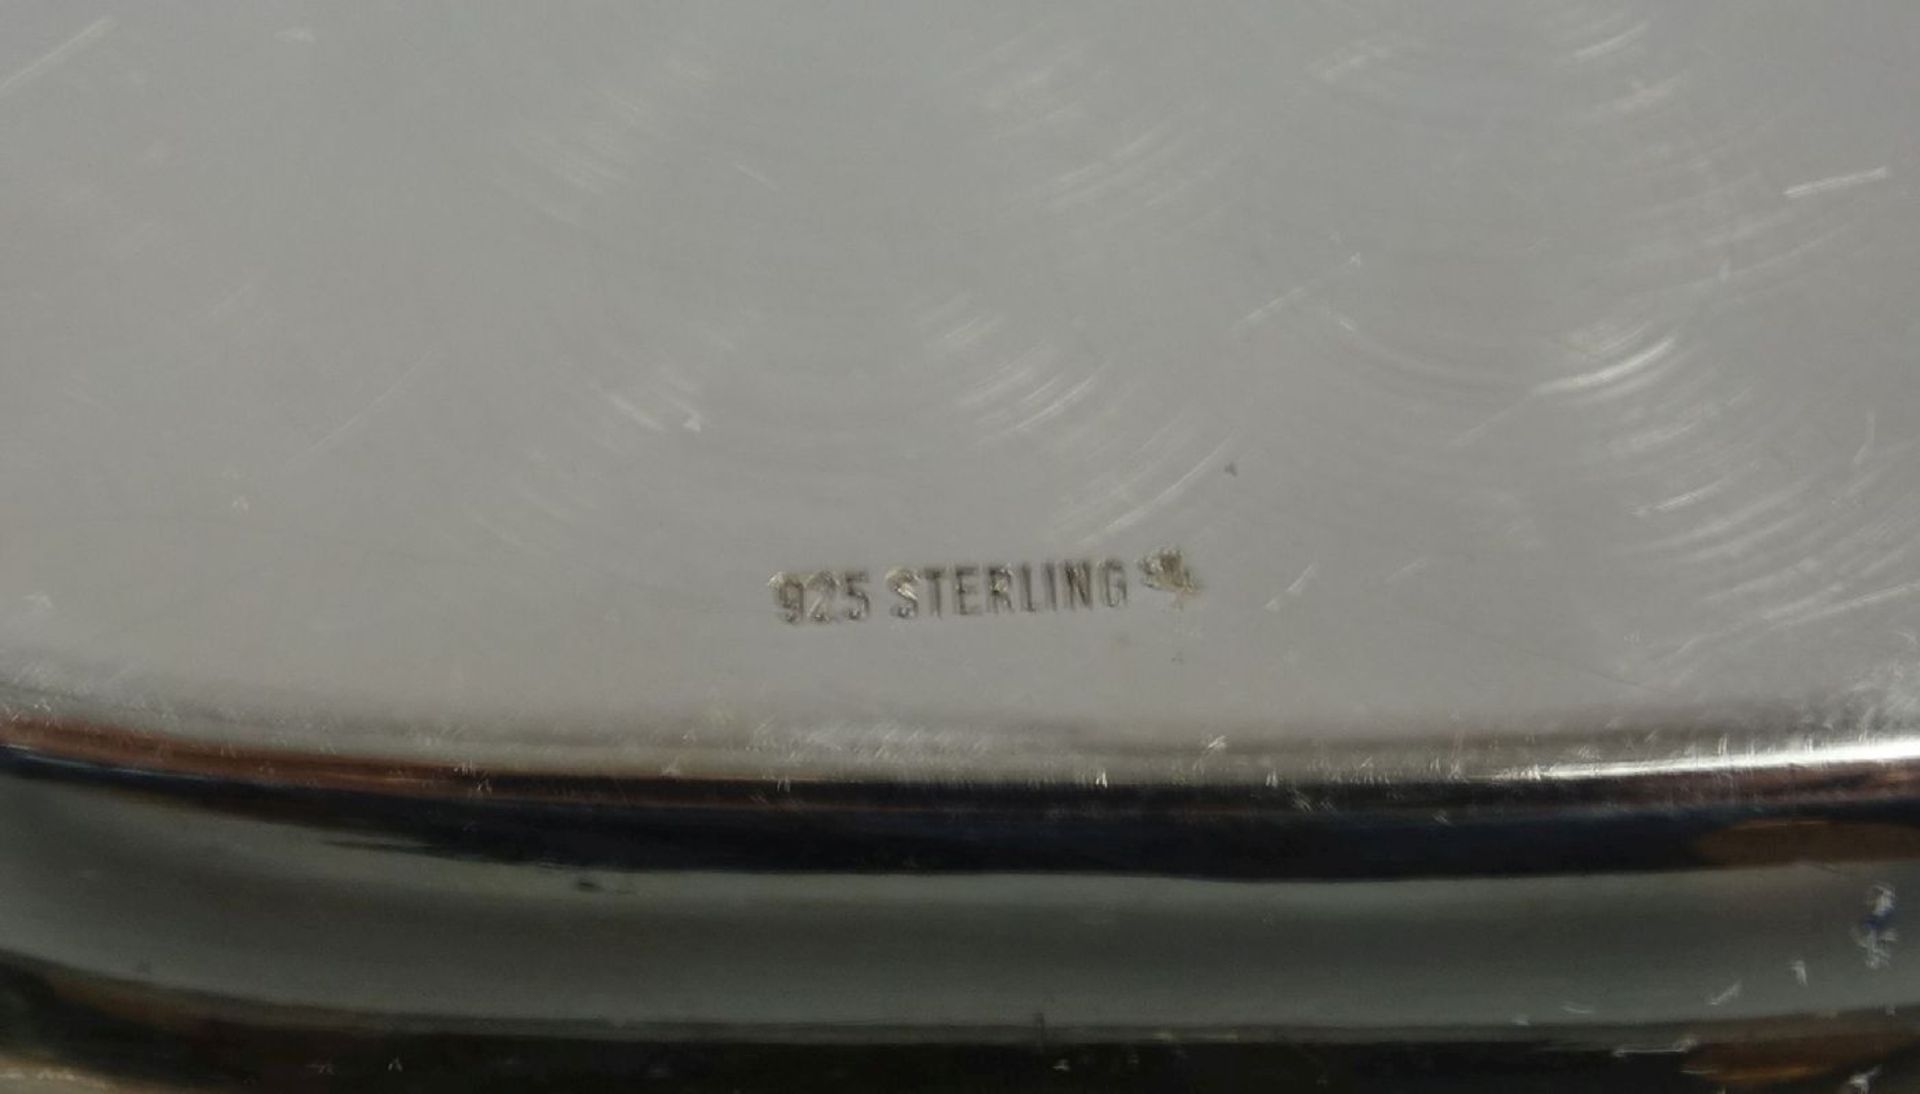 SCHALE / KARREESCHALE / silver bowl, 925er Silber (122 g), bezeichnet "Sterling", gepunzt mit - Image 2 of 3